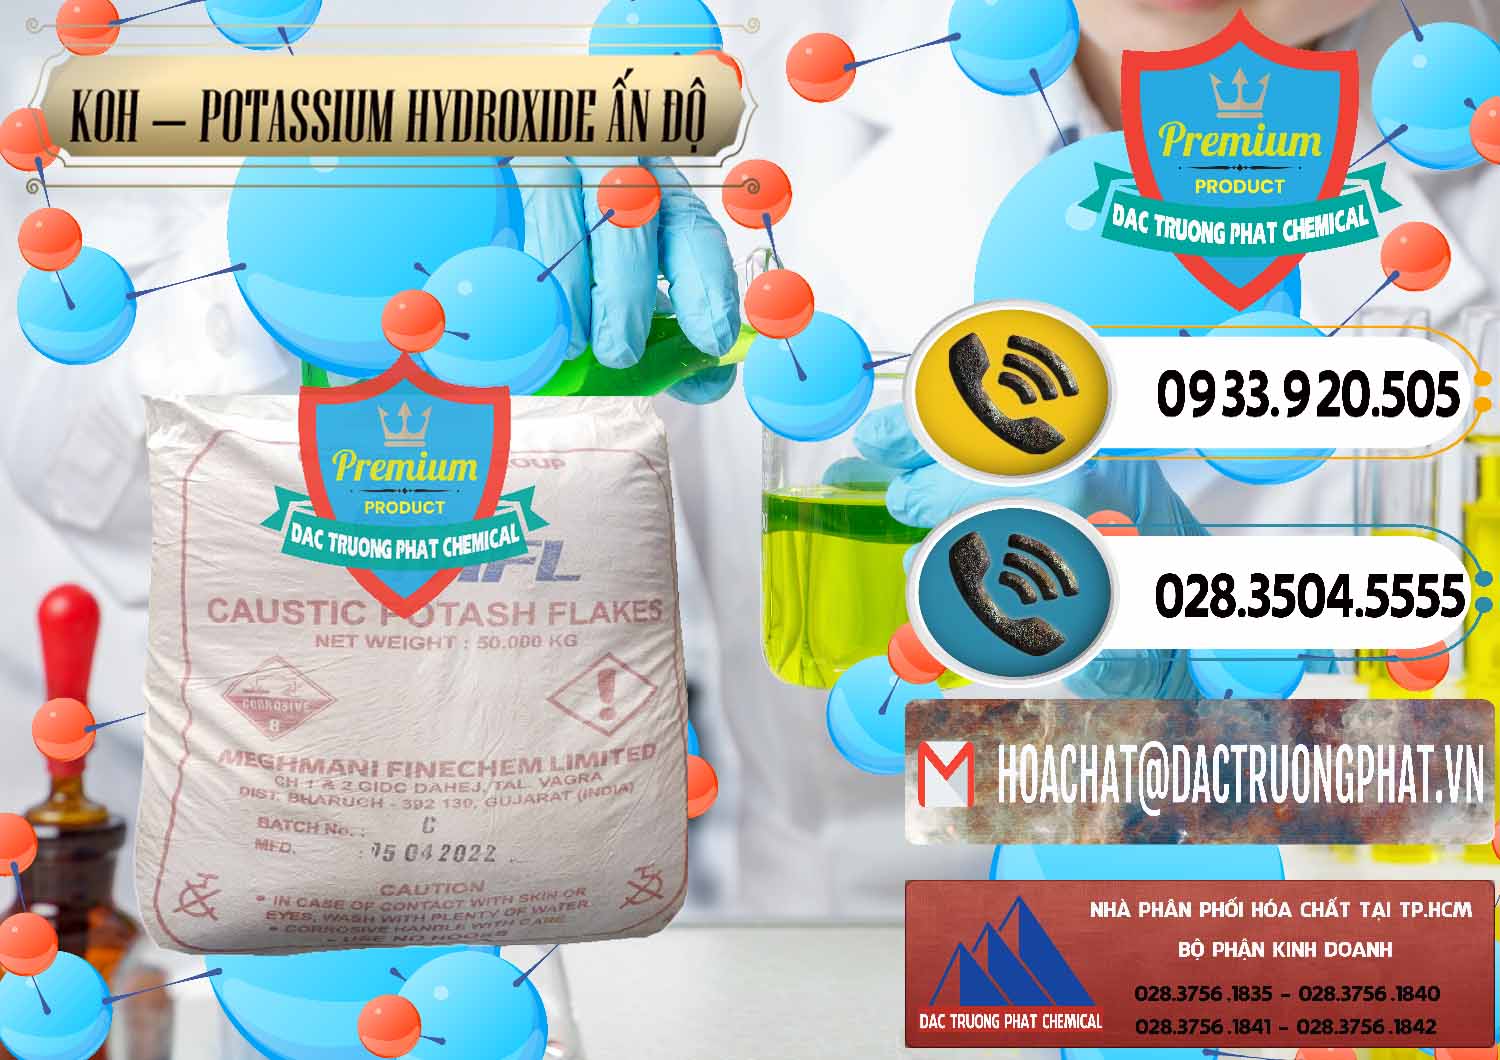 Cty chuyên bán - cung ứng KOH ( 90%) – Potassium Hydroxide Ấn Độ India - 0352 - Kinh doanh & cung cấp hóa chất tại TP.HCM - hoachatdetnhuom.vn